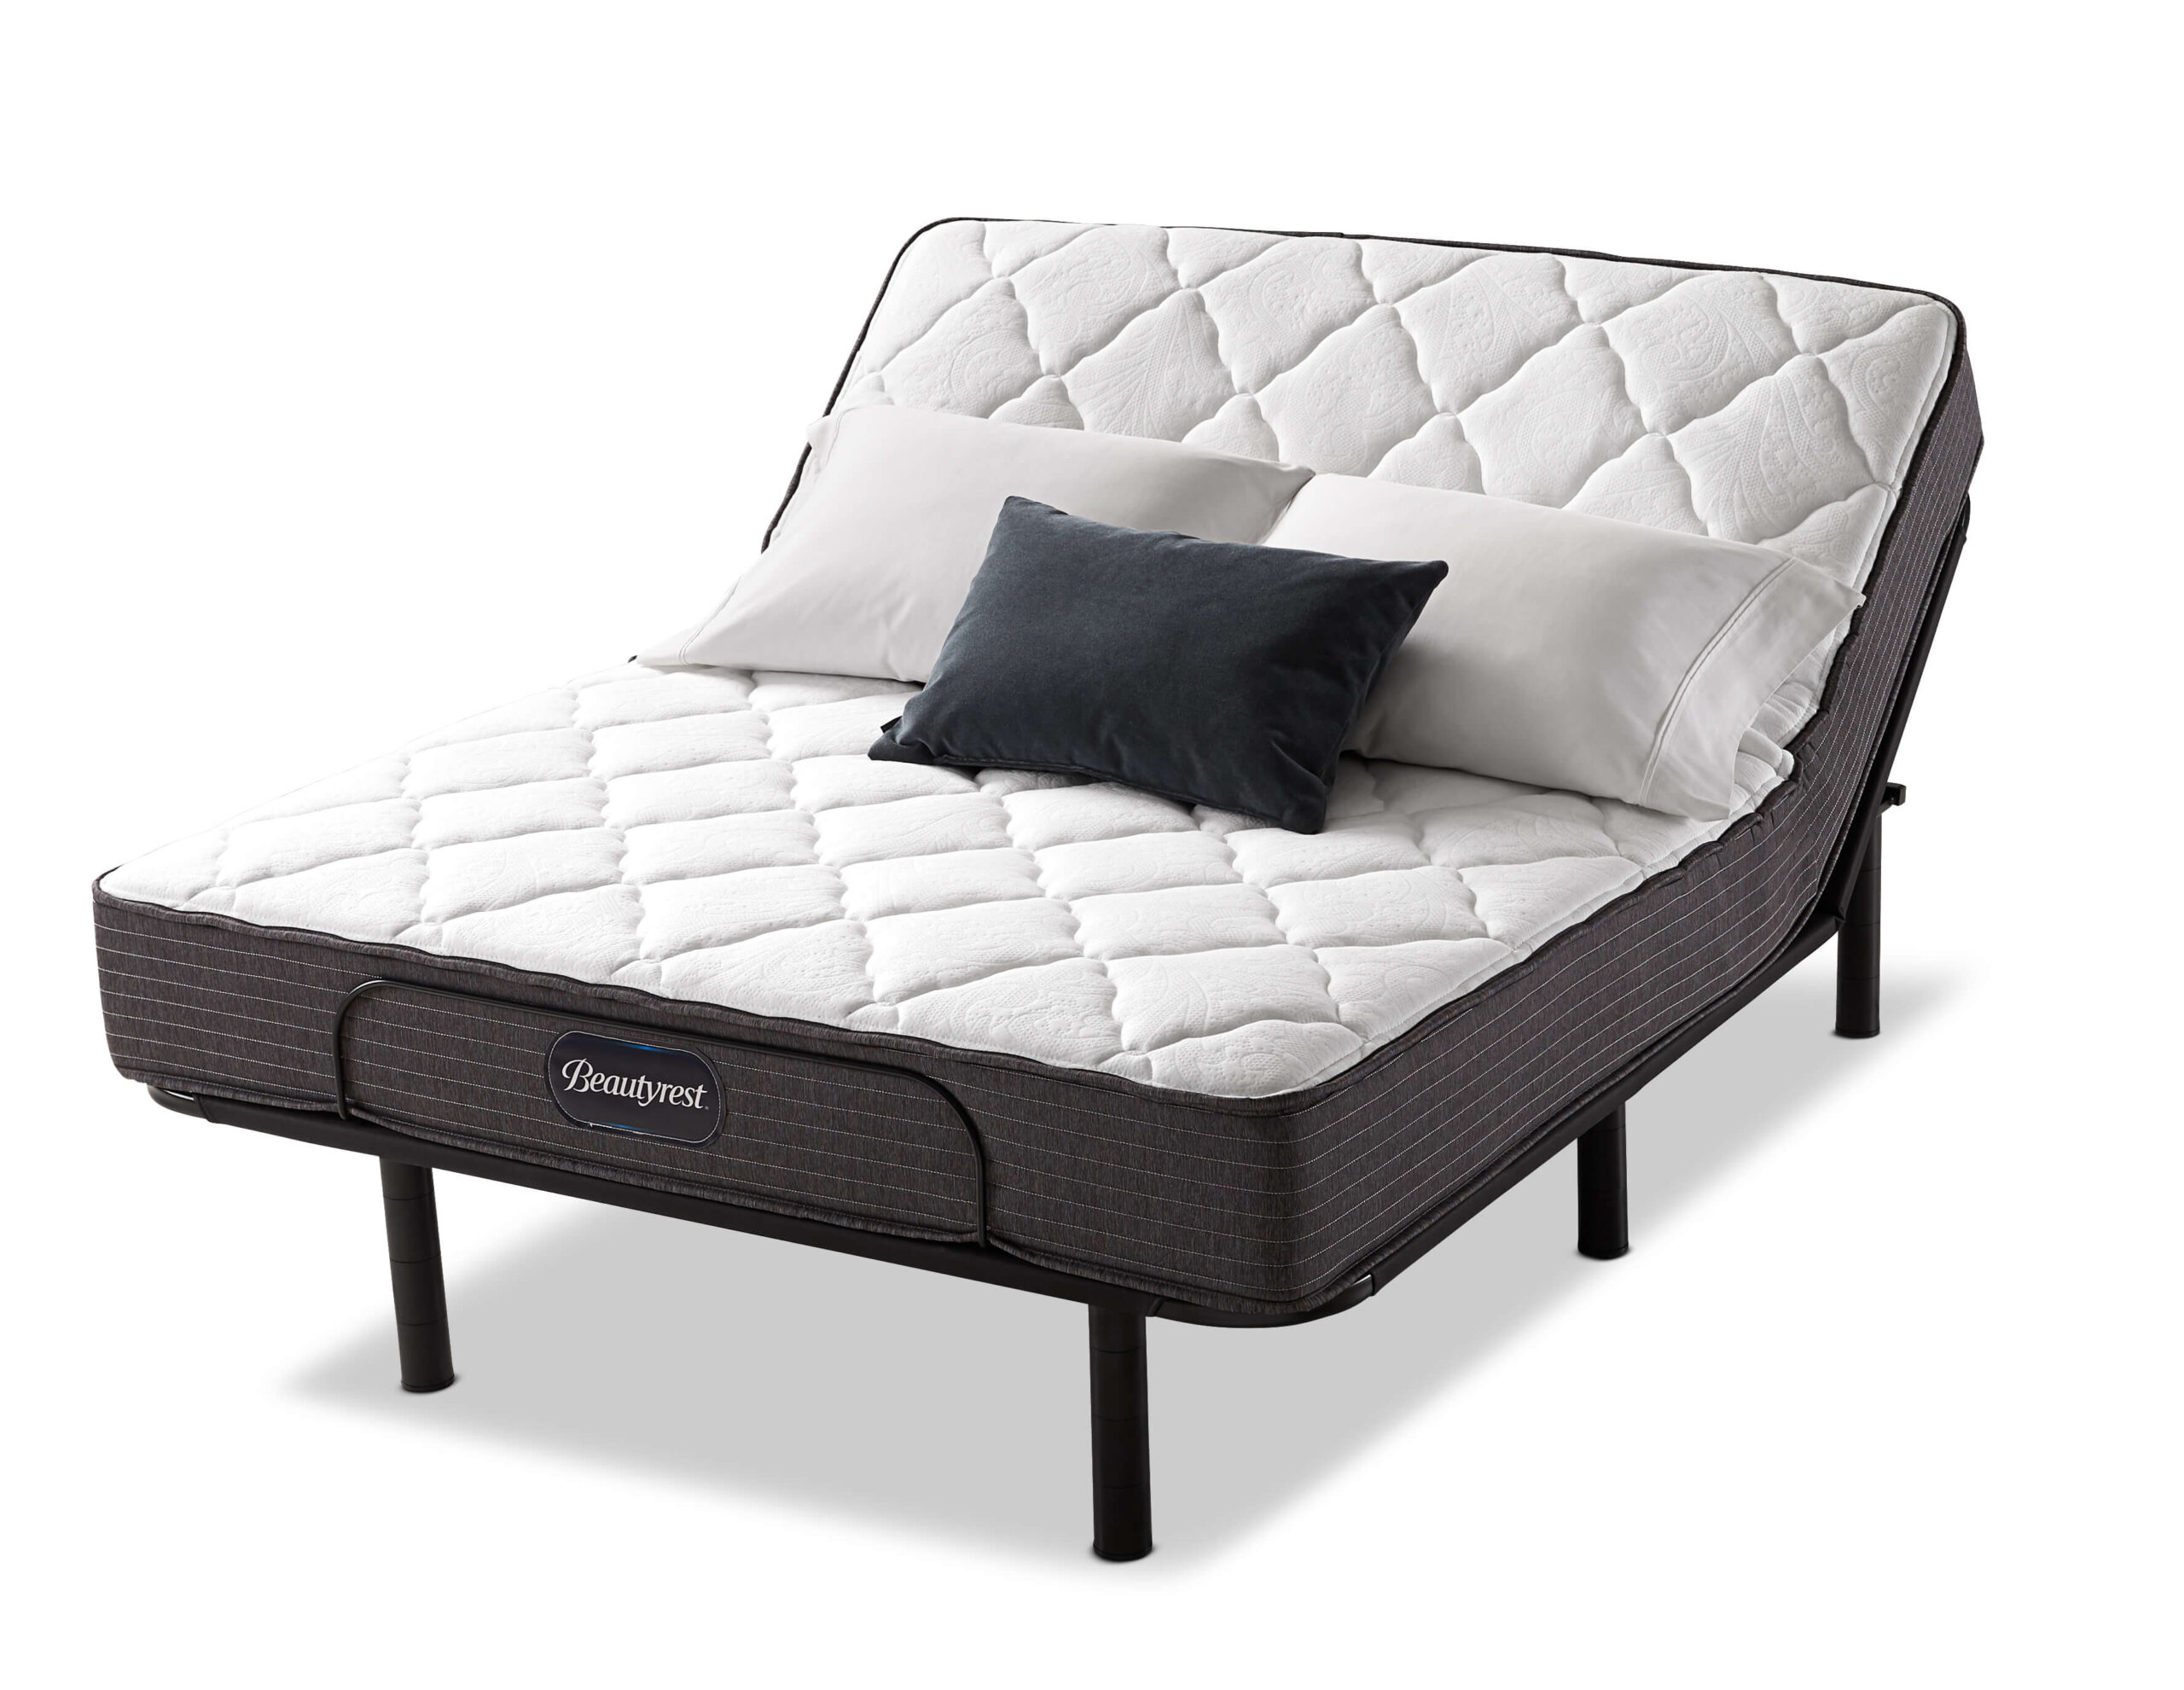 beautyrest carly tight top firm mattress